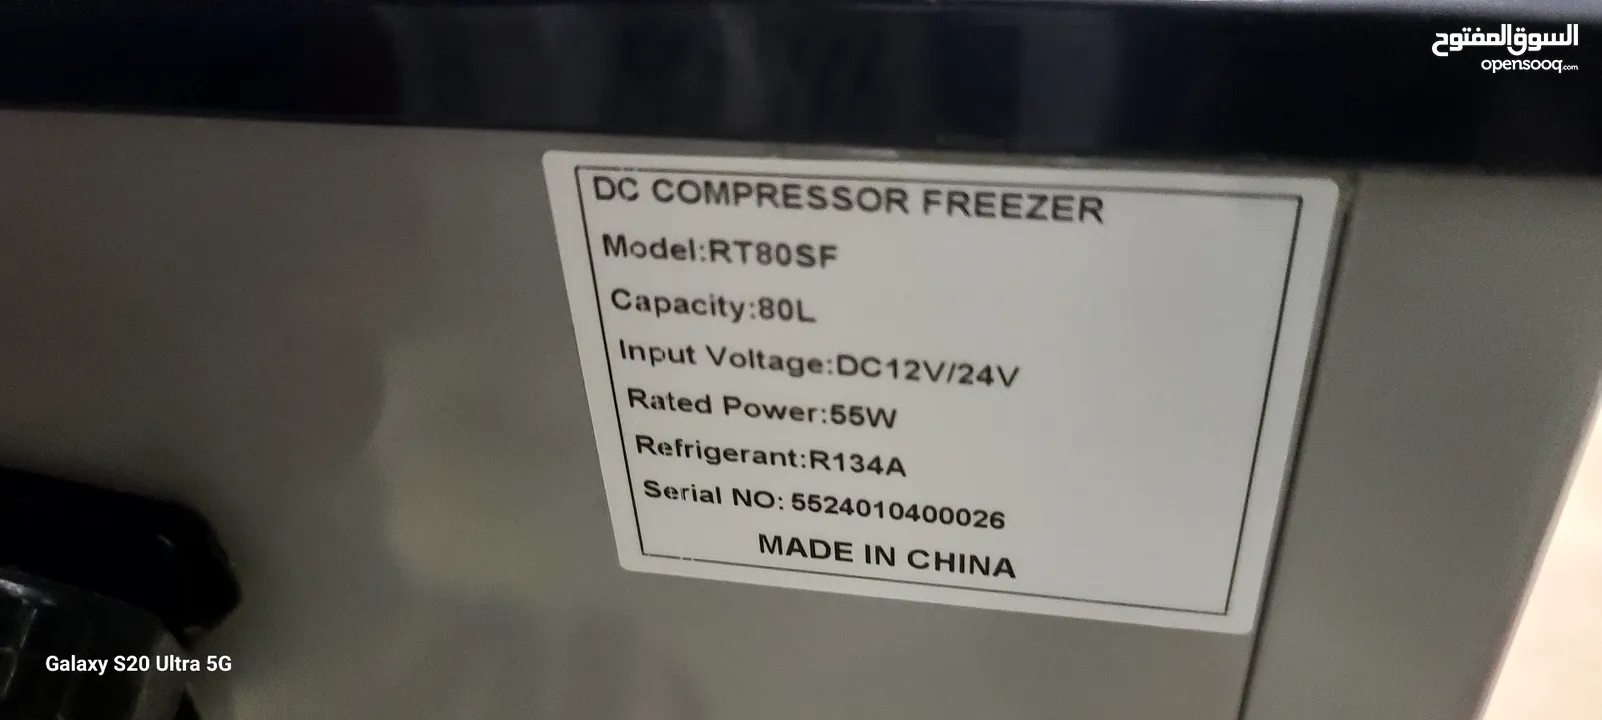 Small DC compressor Freezer 80Liter capicity